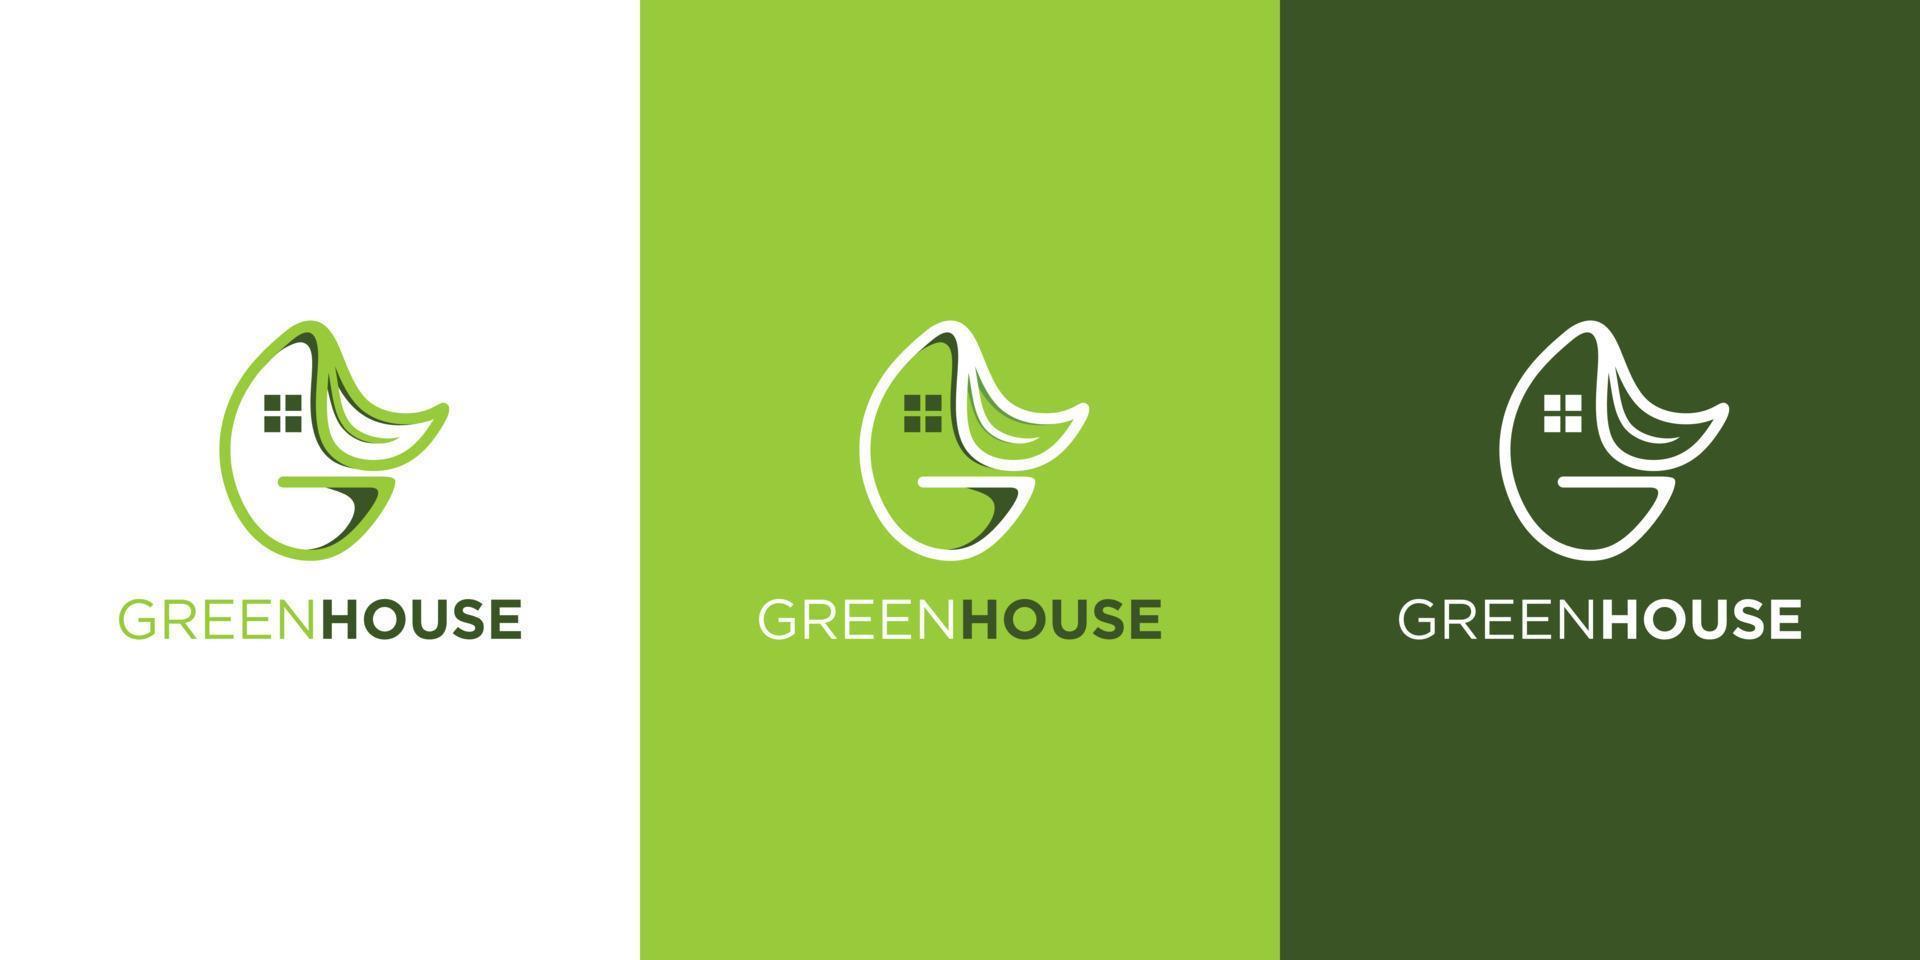 plantilla de logotipo de casa verde con concepto moderno vector